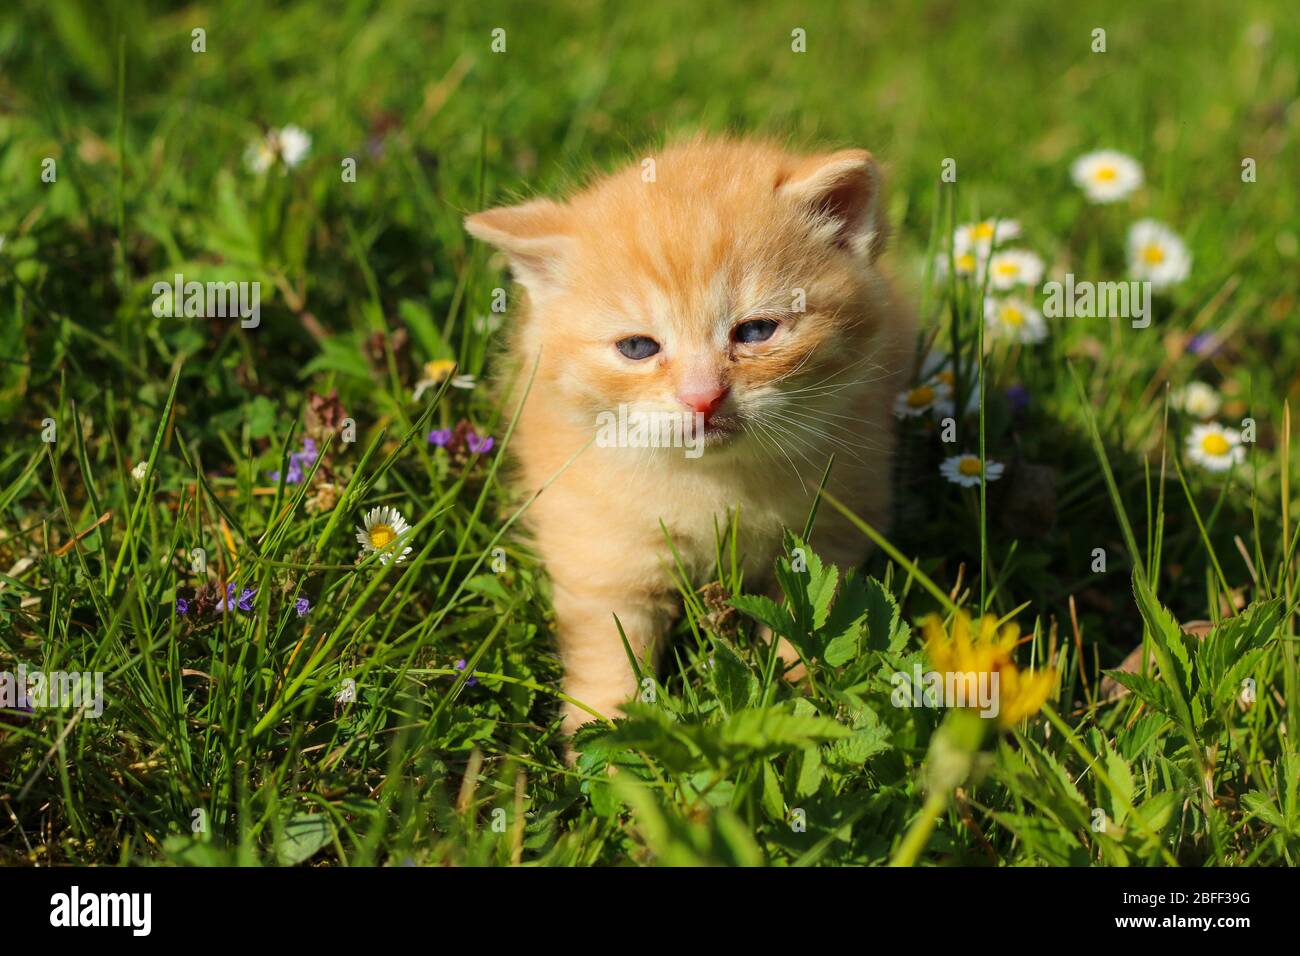 Il ritratto di un giovane gattino di tre settimane nell'erba e nei fiori. Aspetto carino e felice anche con un po 'di squinting occhi. Foto Stock